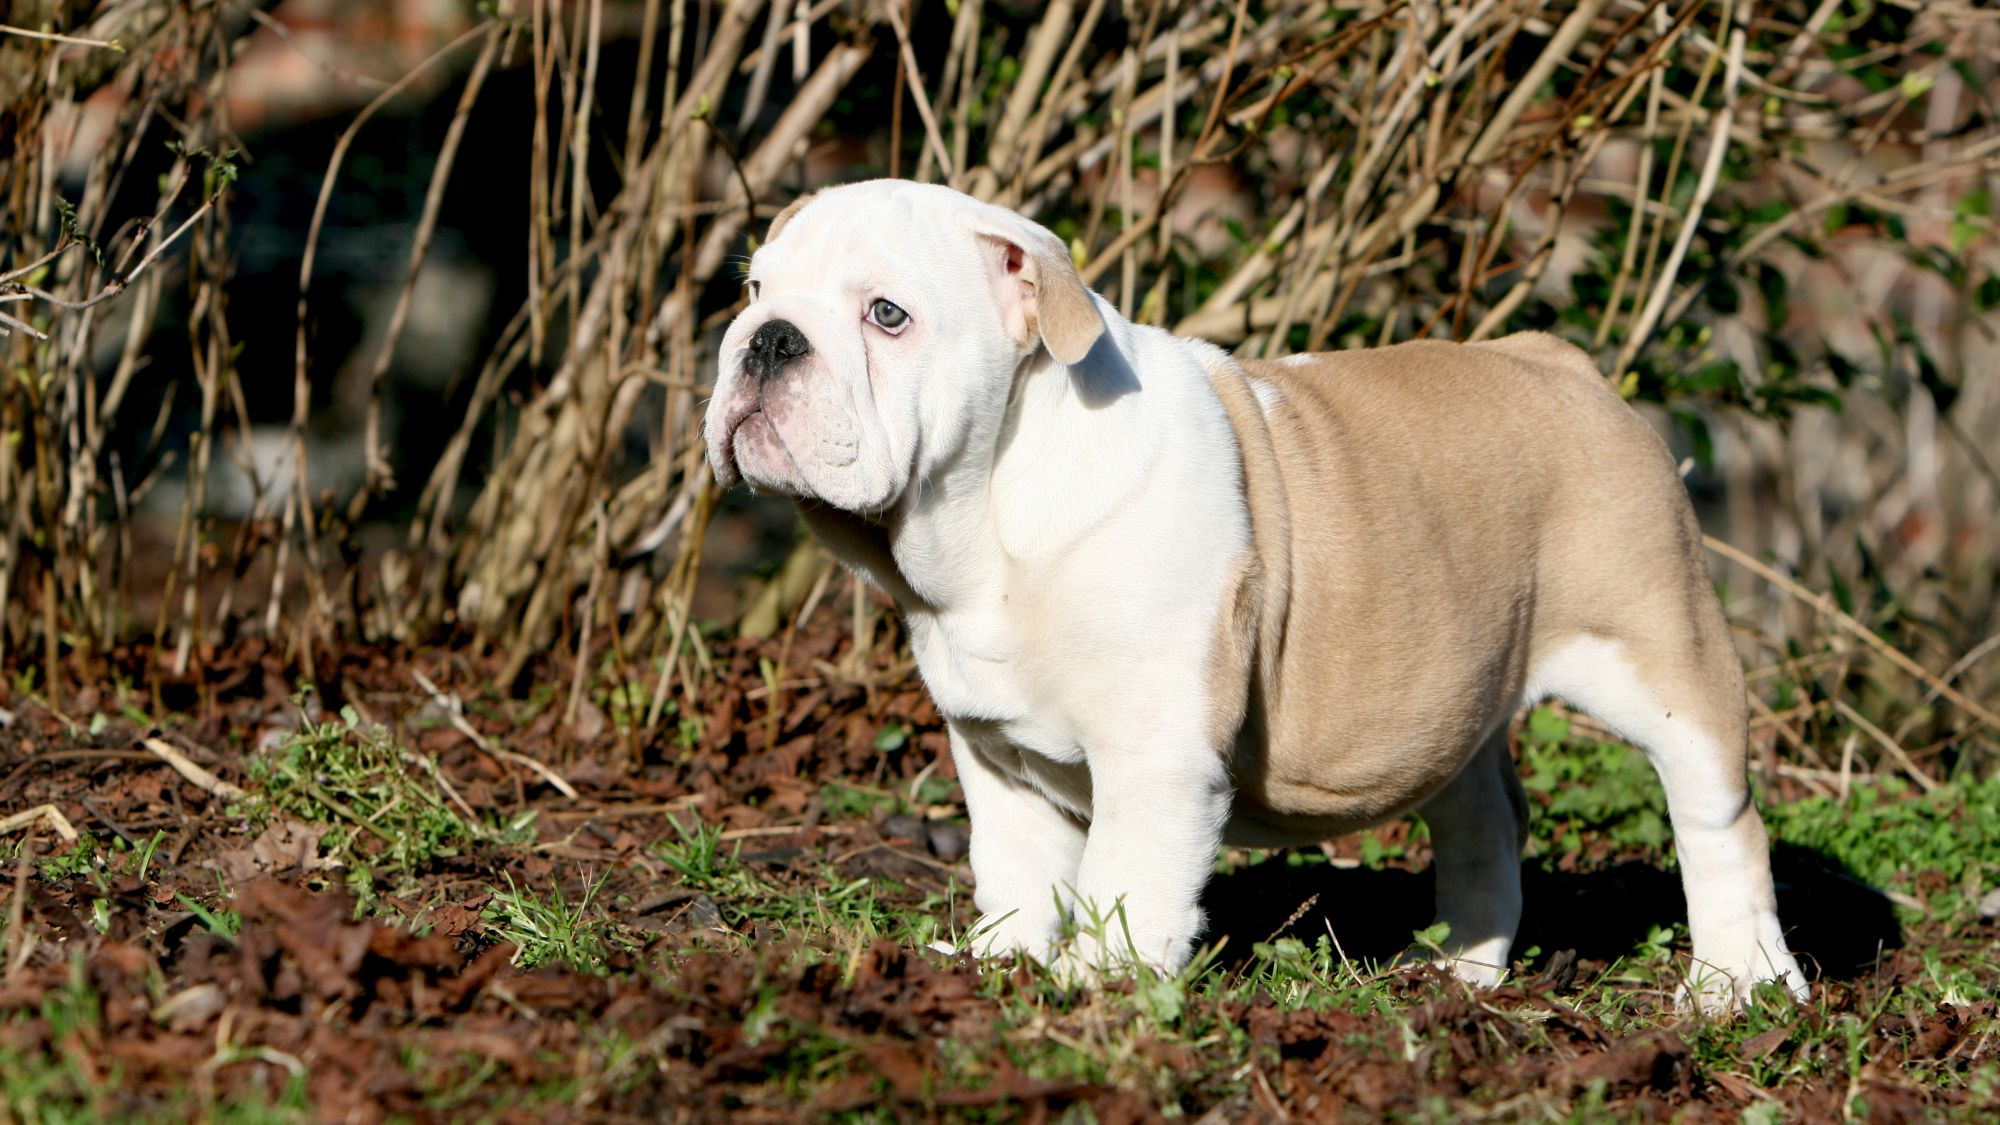 Nærbilde av en engelsk bulldog i svart/hvitt